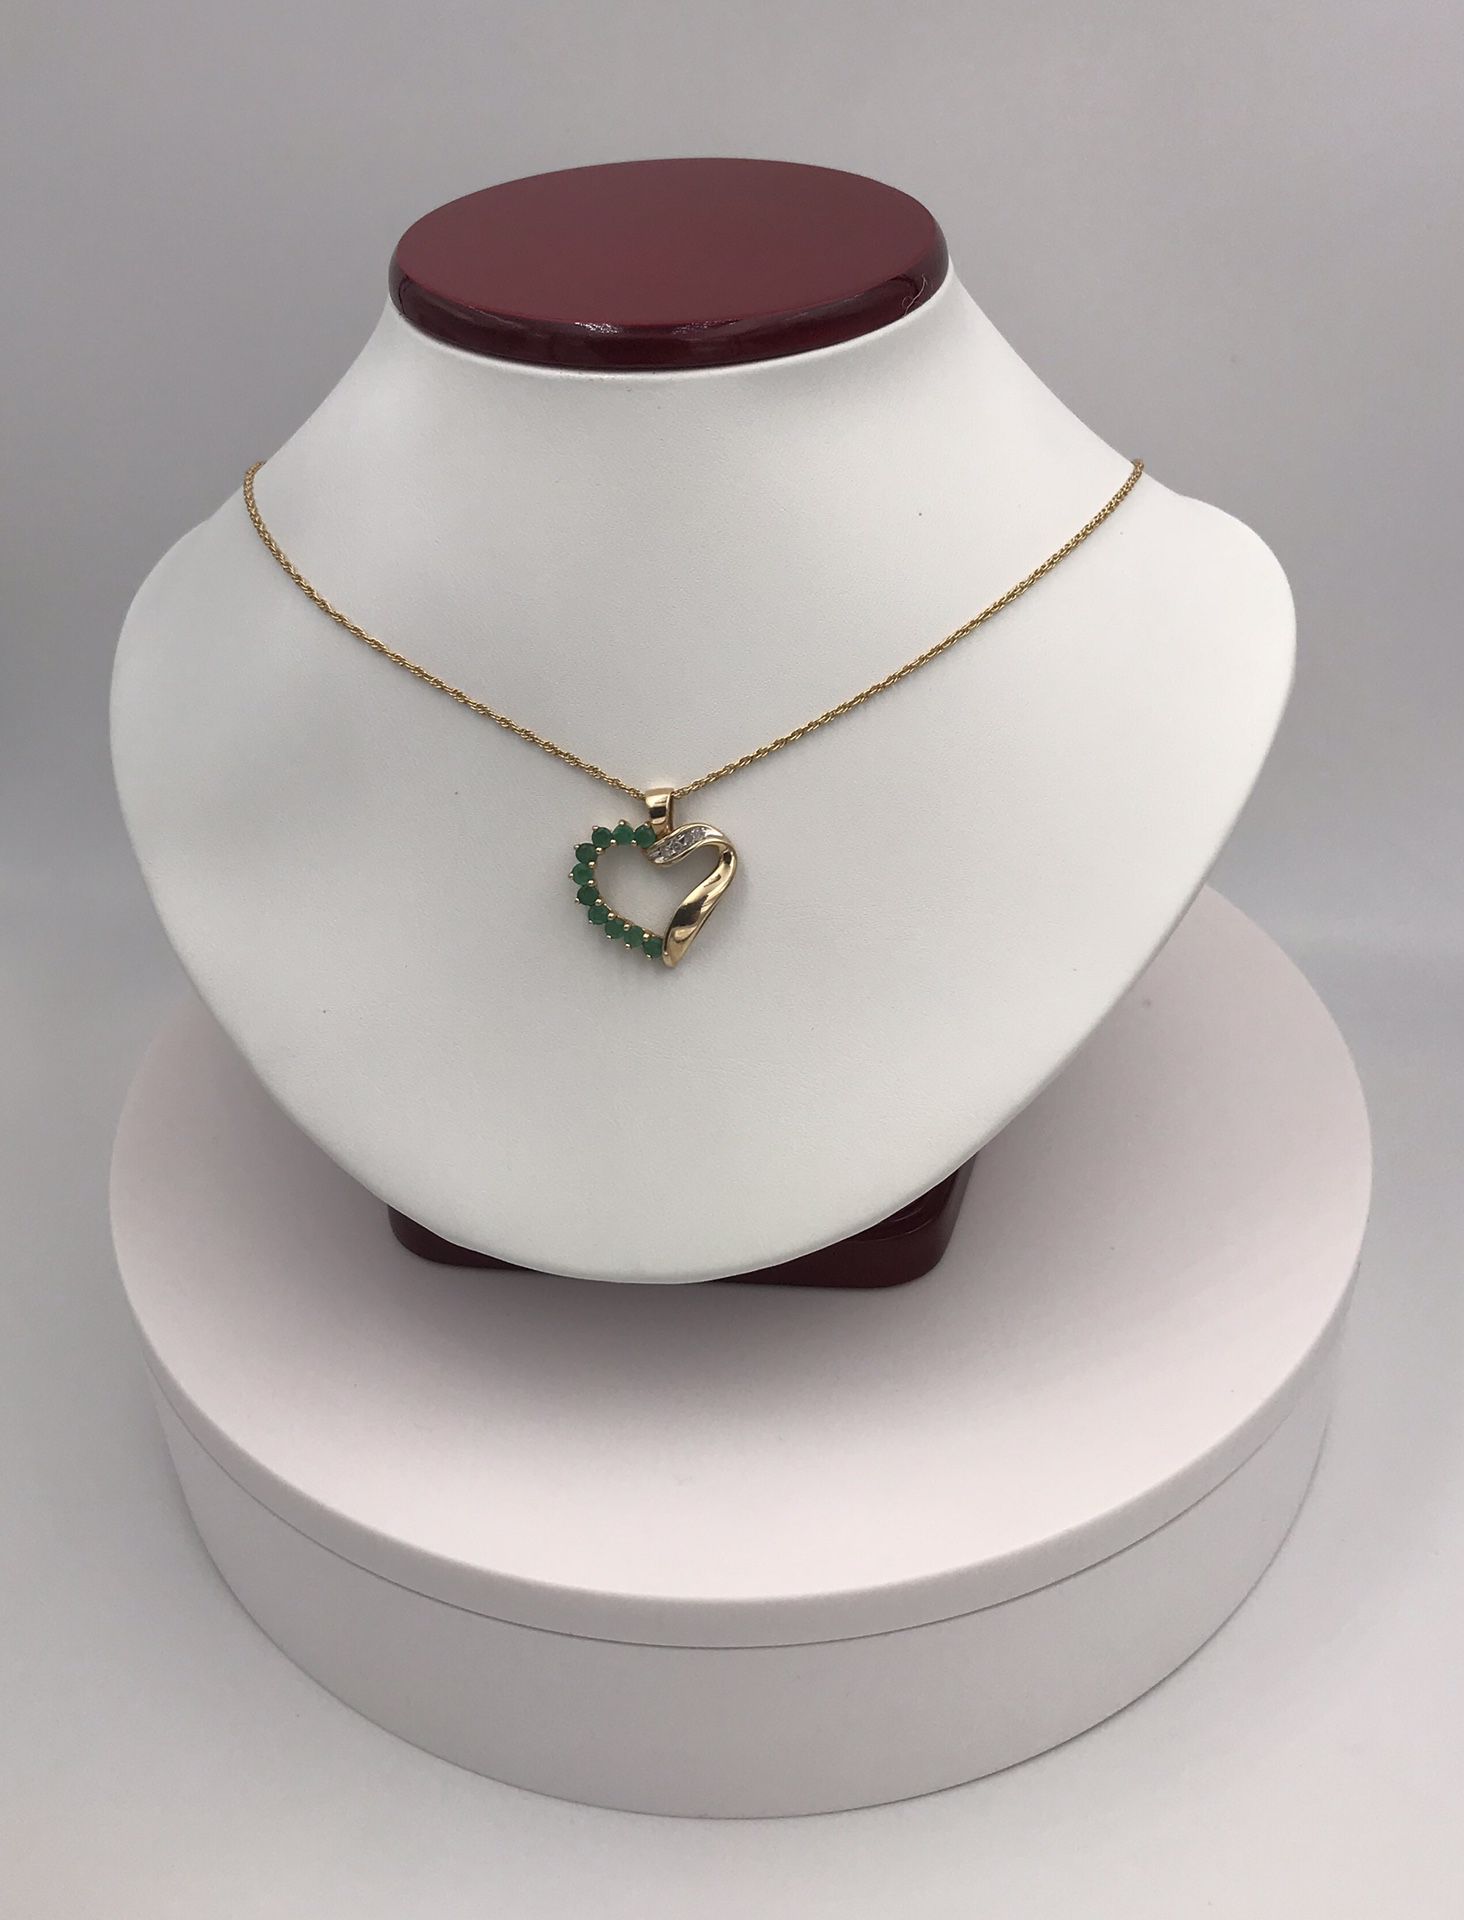 ***Special *** Emerald and diamond pendant for Mother’s Day 10Kt. Precioso pendiente de esmeraldas y diamantes en oro 10K